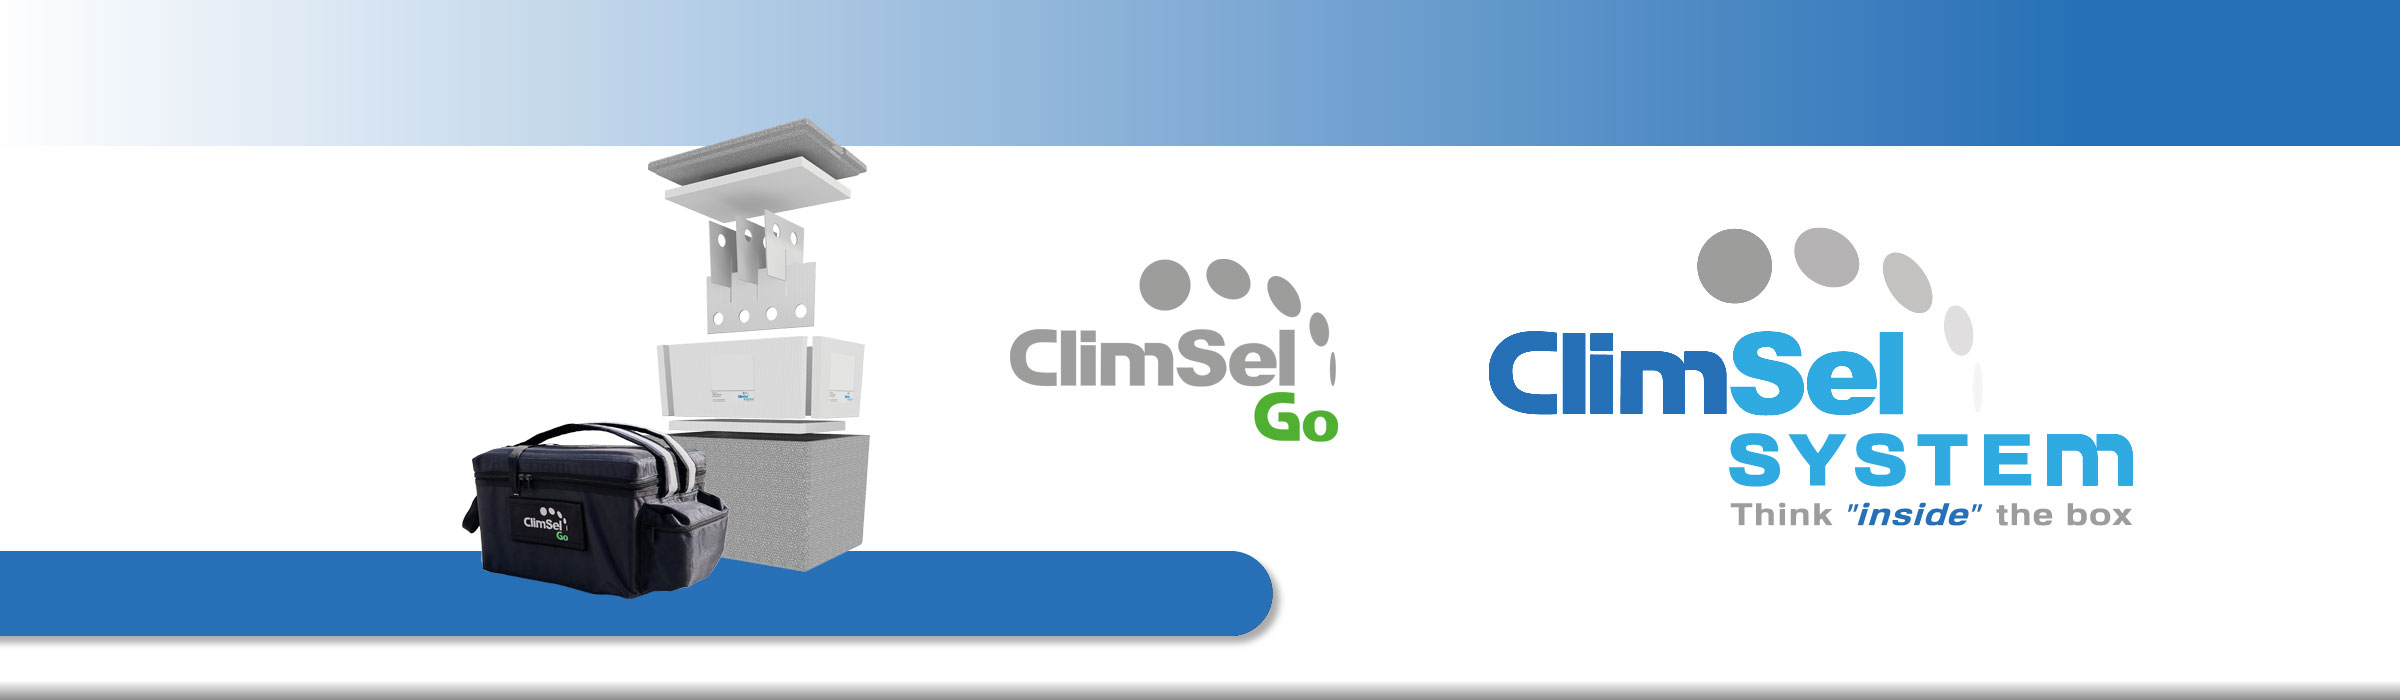 Klicka för att se nya ClimSel Go